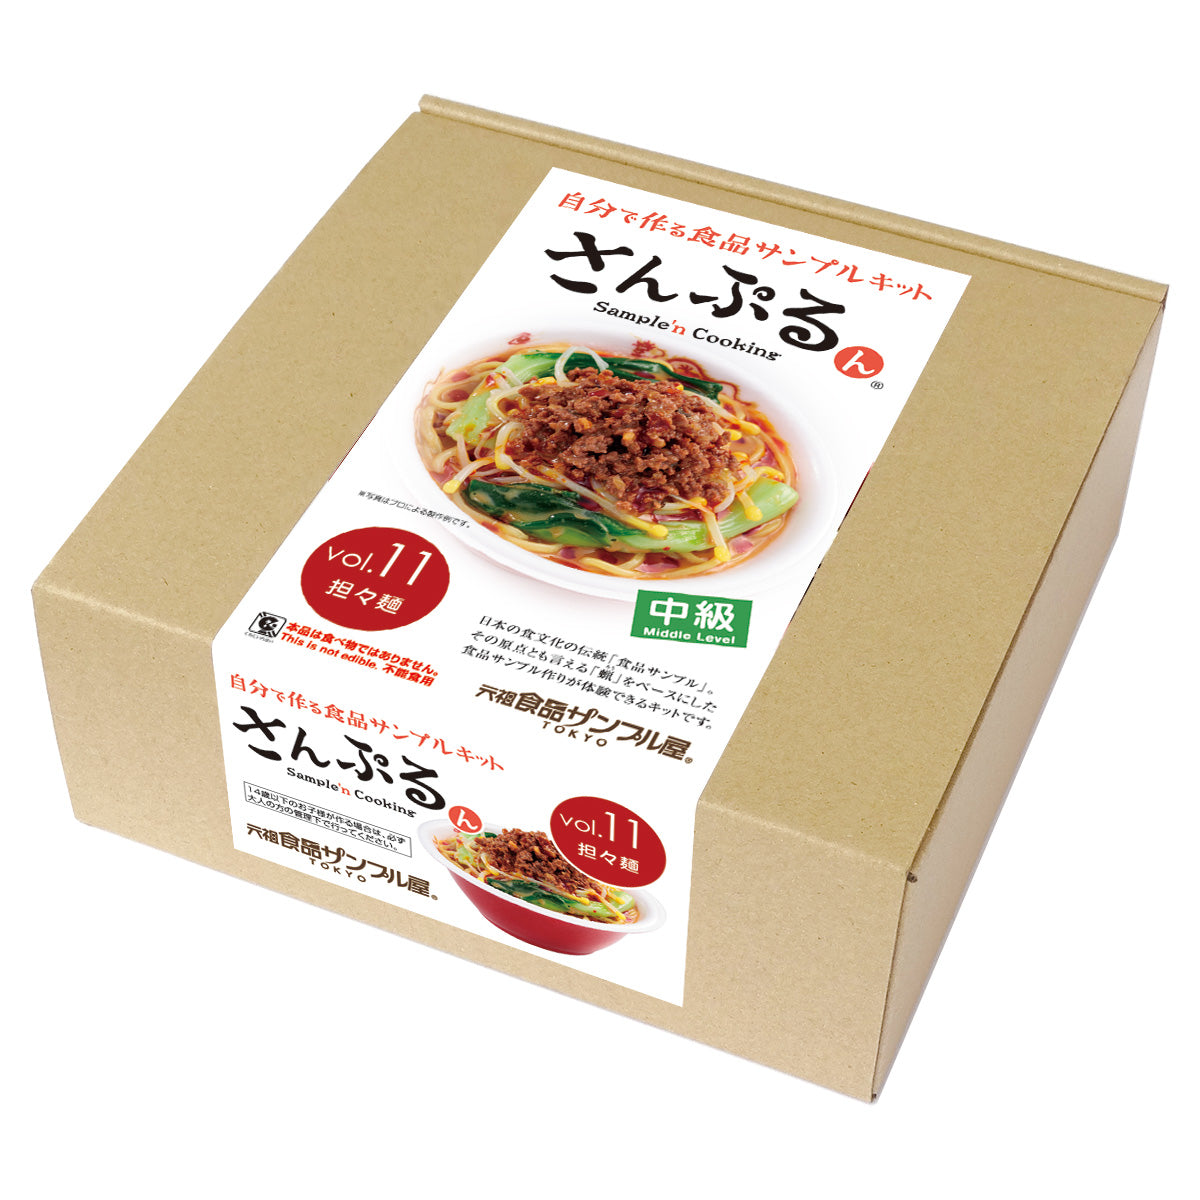 自分でつくる食品サンプル製作キット「さんぷるんvol.11 坦々麺」のパッケージ画像です。